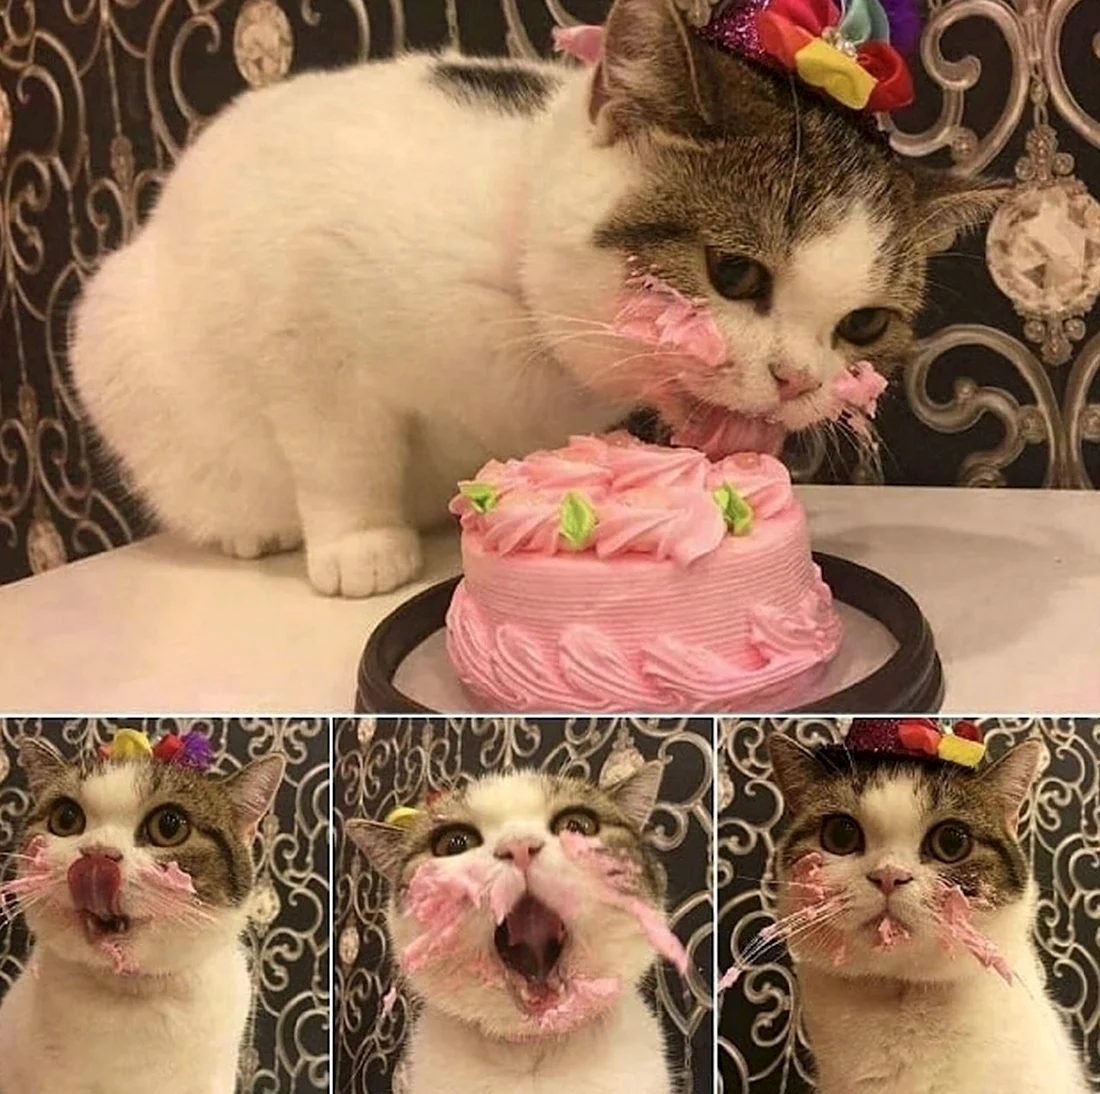 Кот с тортиком